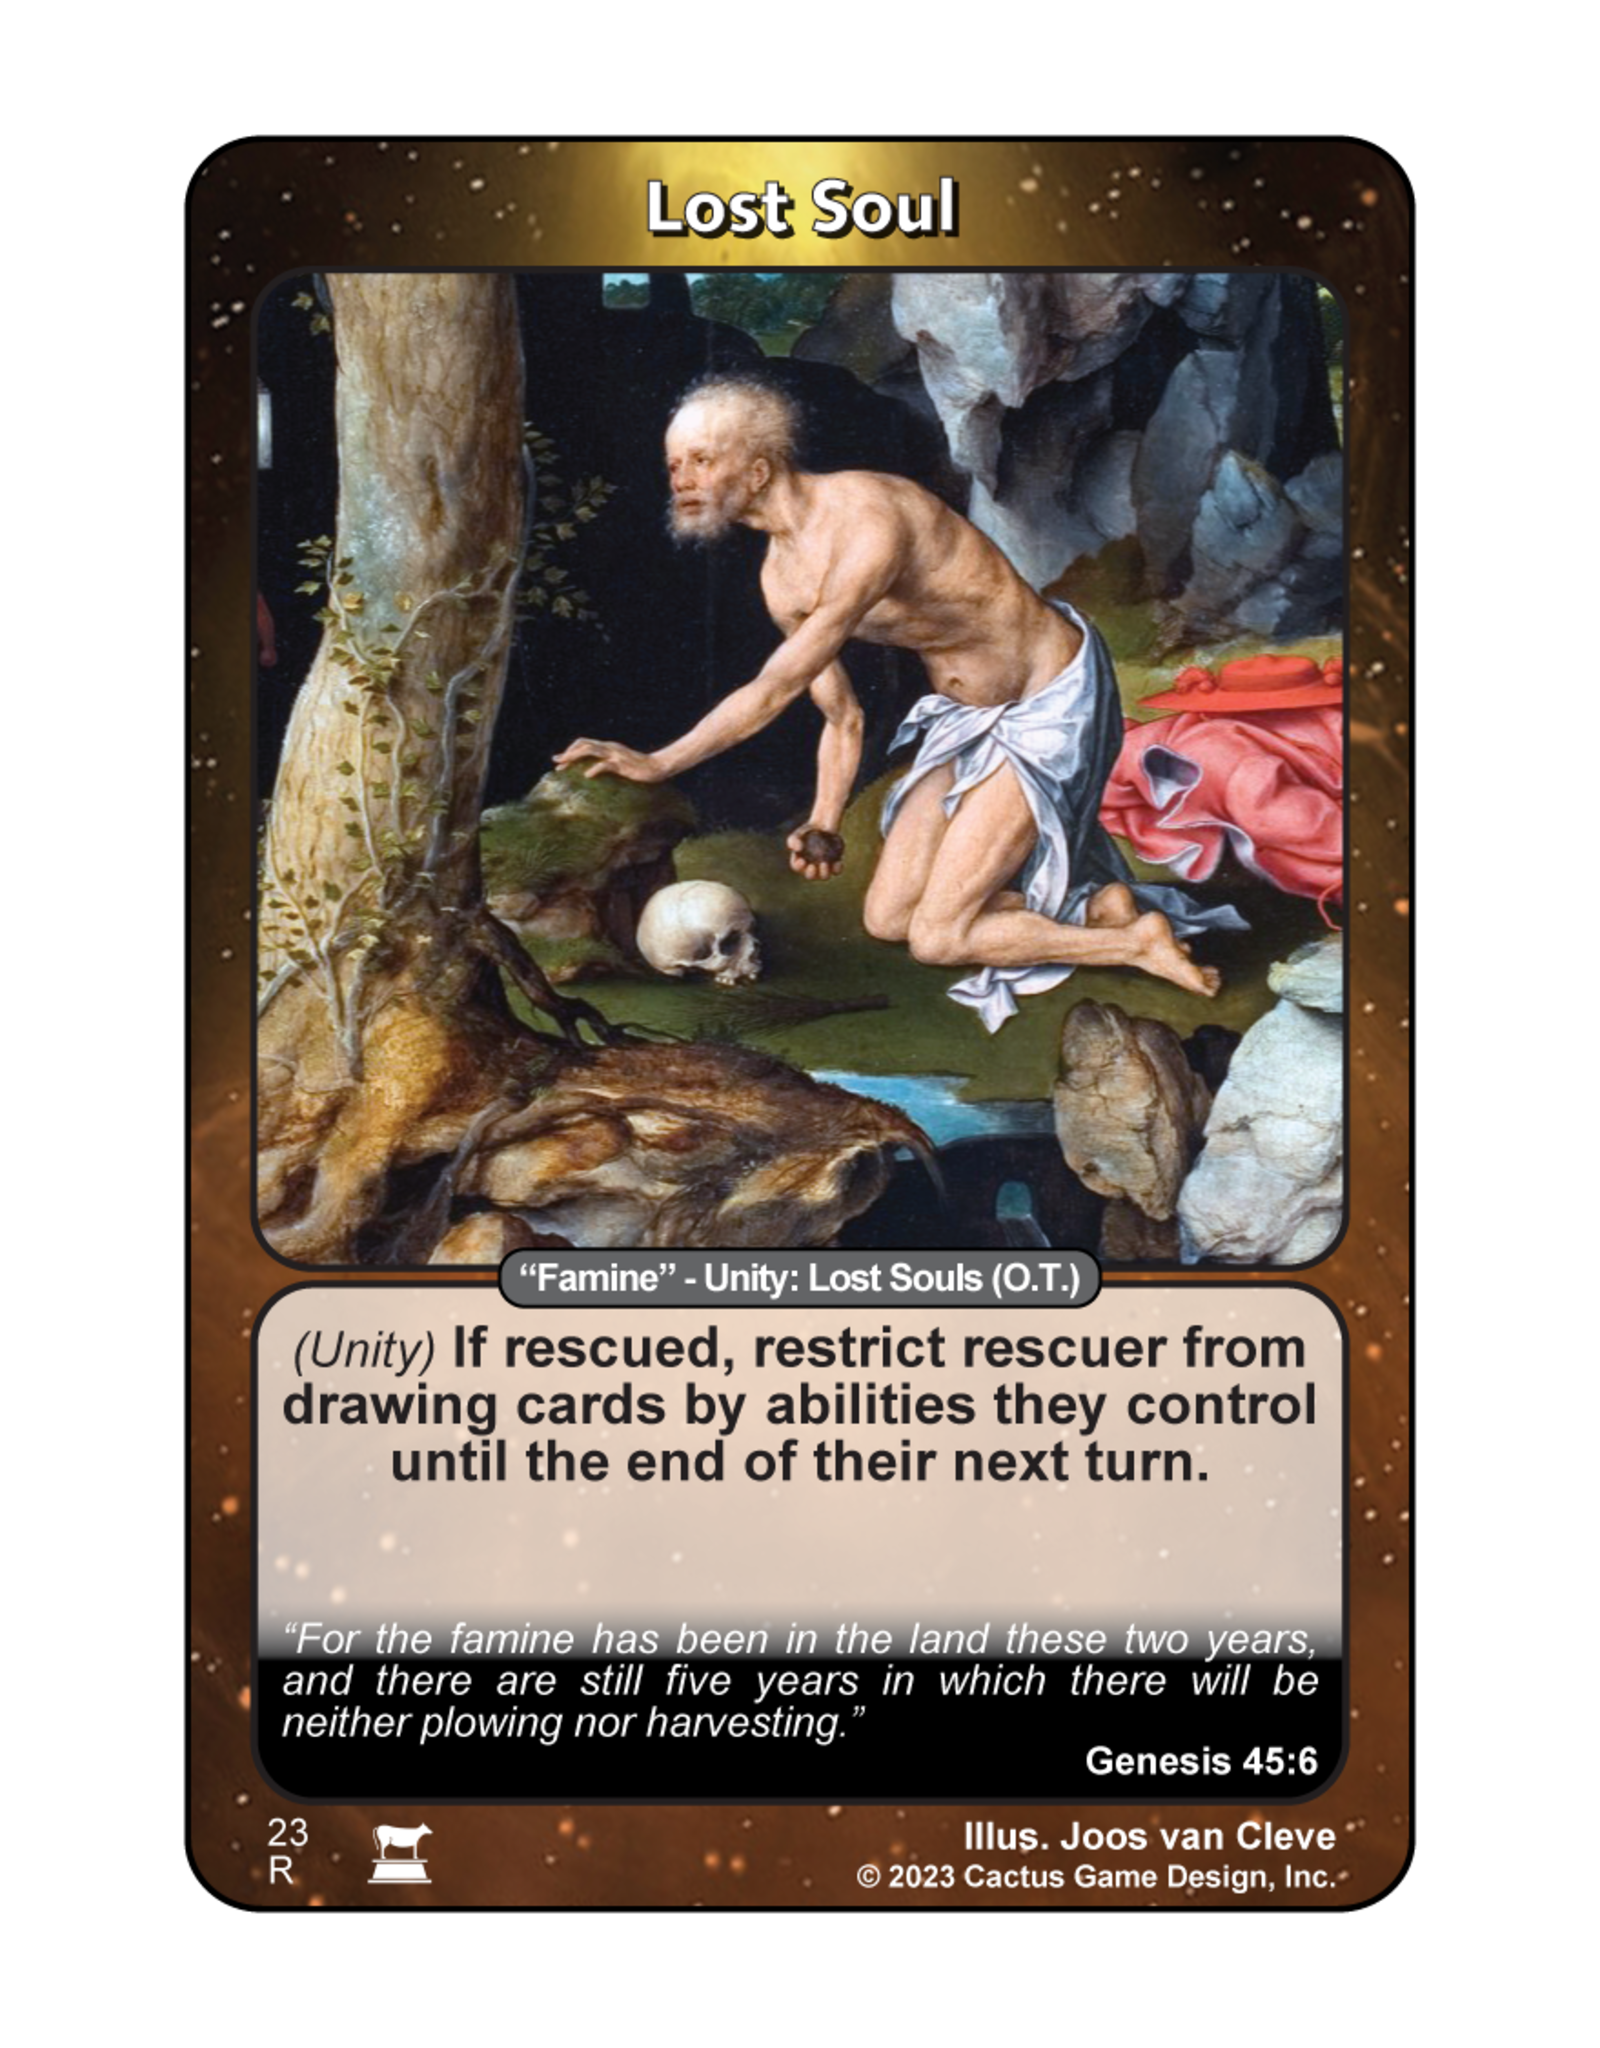 IR: Lost Soul "Famine" (Genesis 45:6)